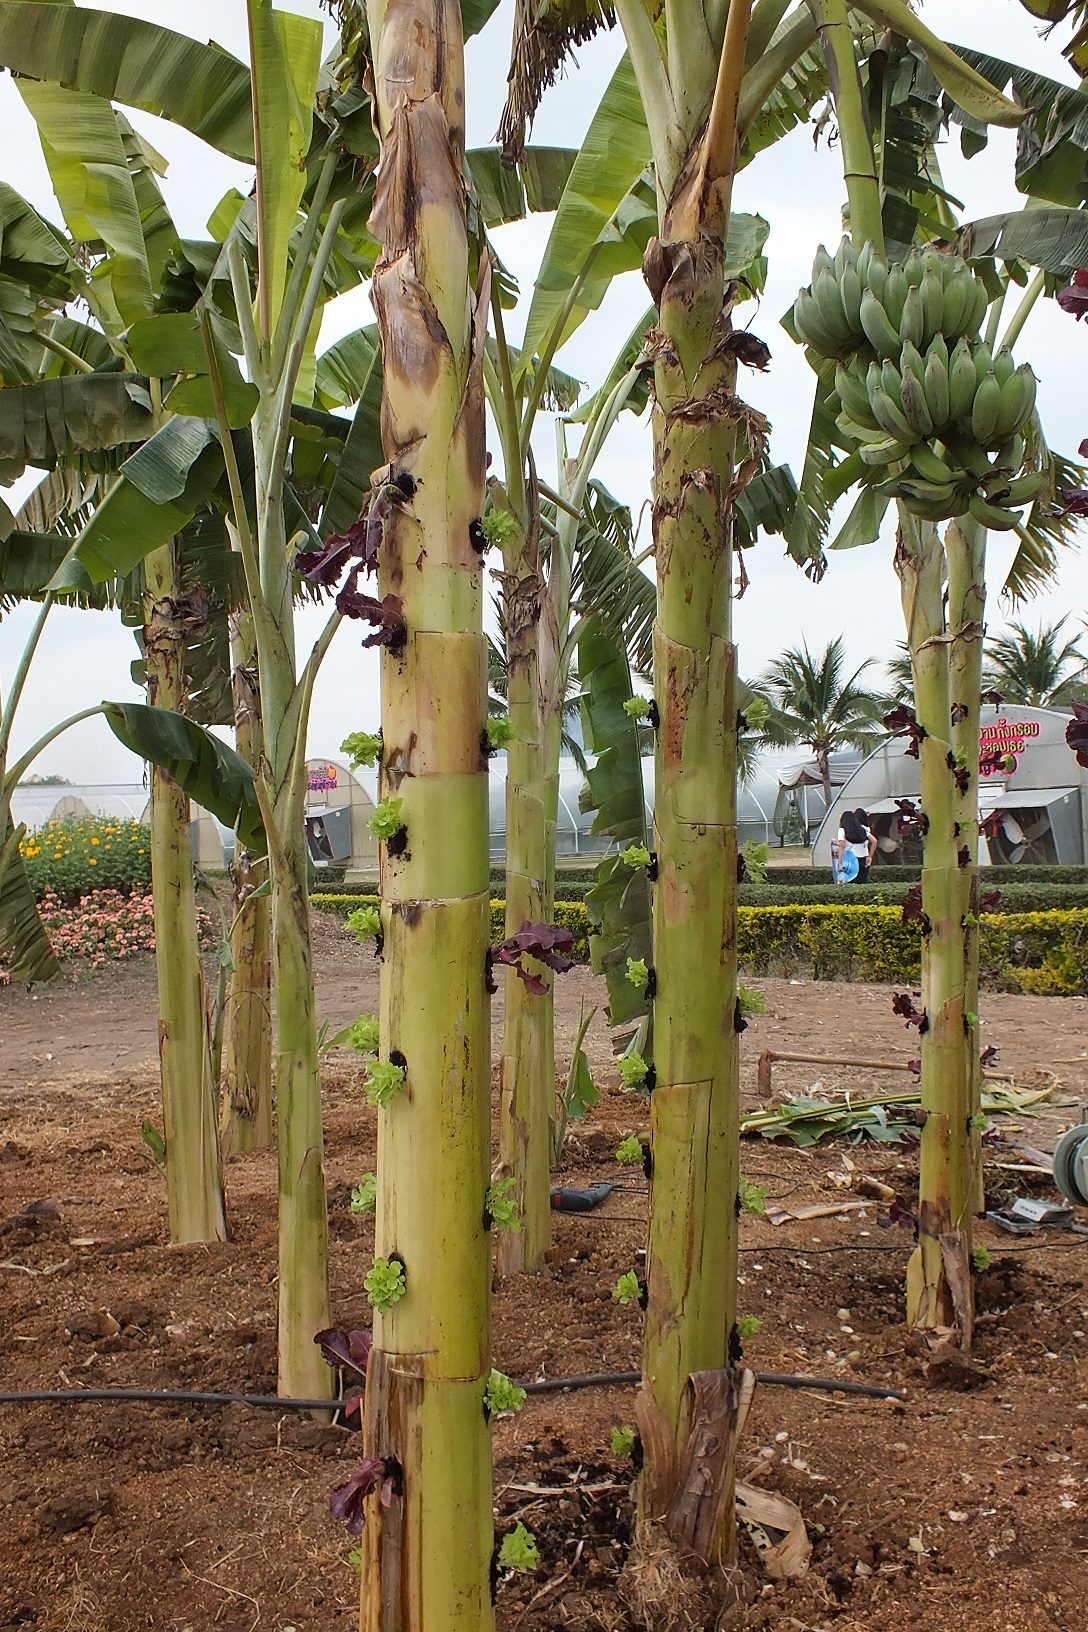 ปลูกผักไร้ดินบนต้นกล้วย ใครๆ ก็ทำได้ ใช้เวลาปลูก 30 วัน เก็บกินได้